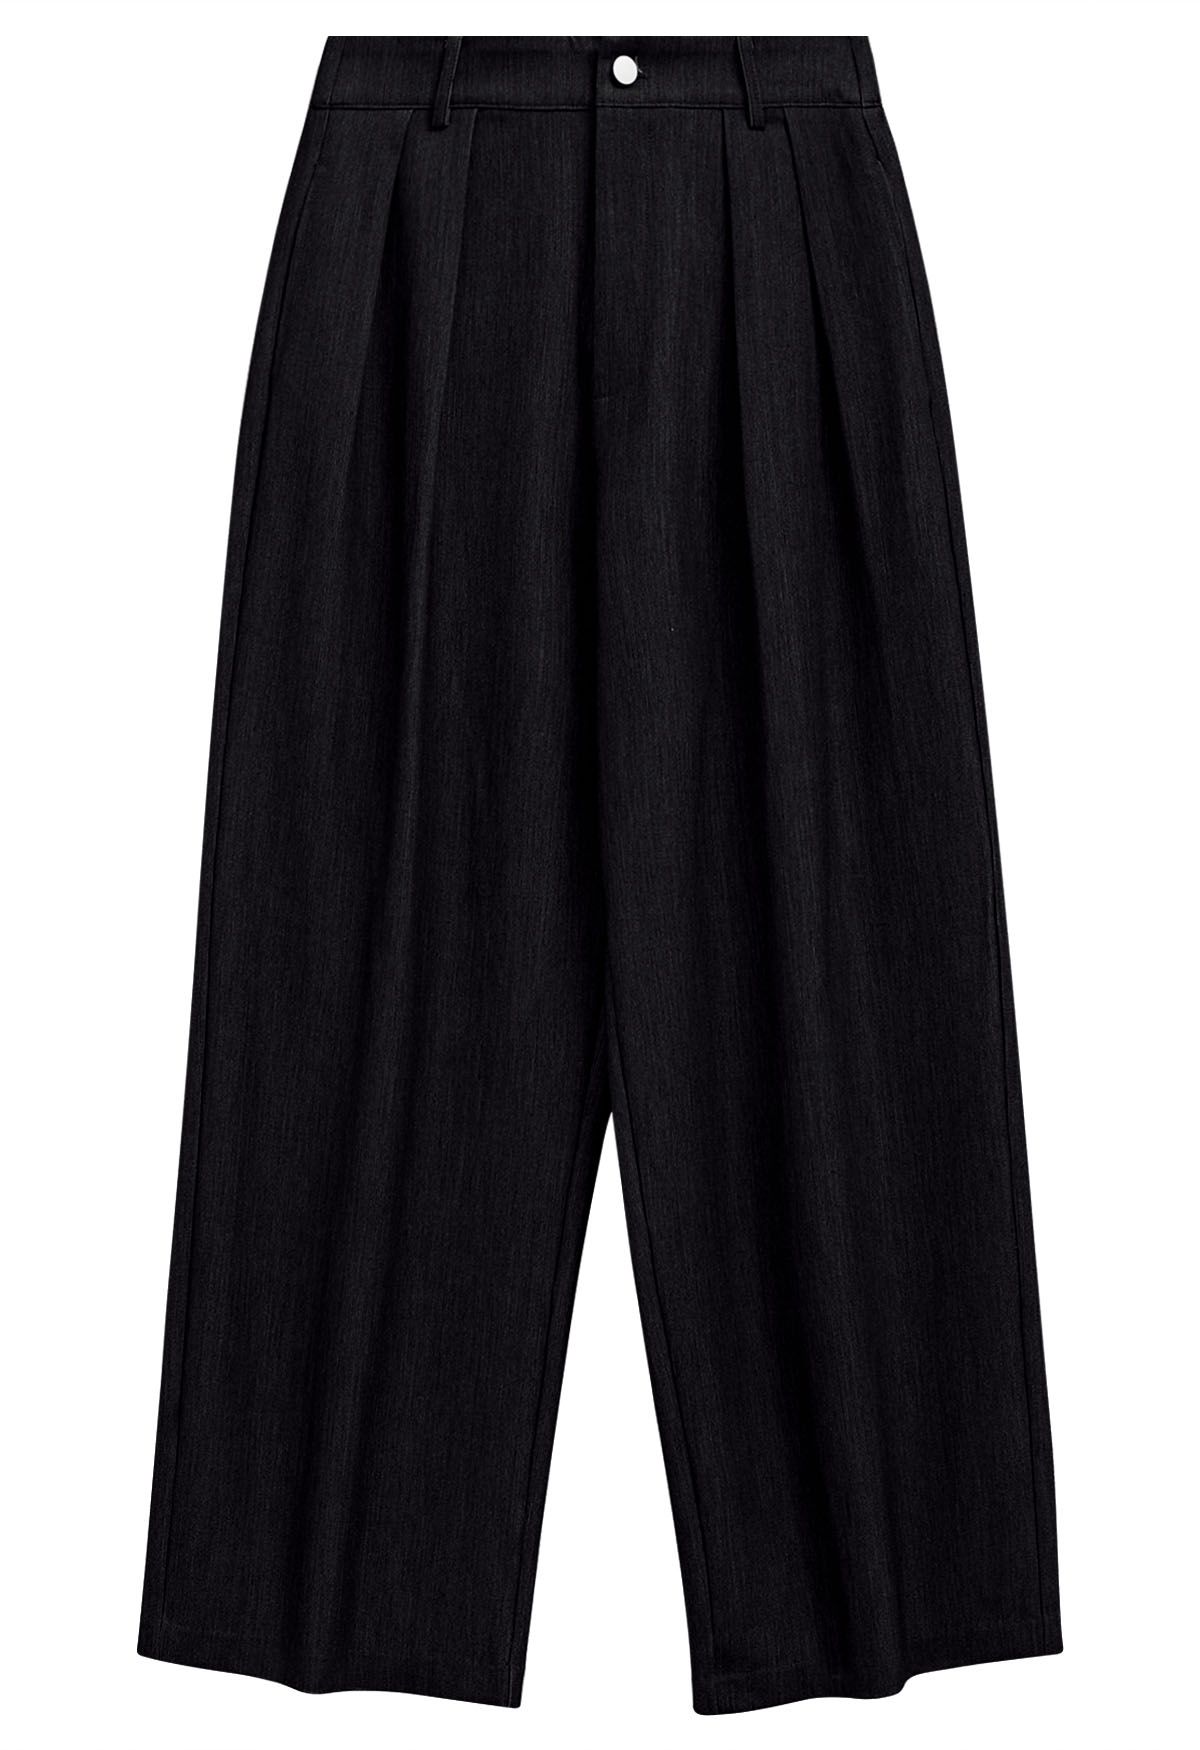 Pantalones anchos de cintura alta con lazo en negro - Retro, Indie and  Unique Fashion